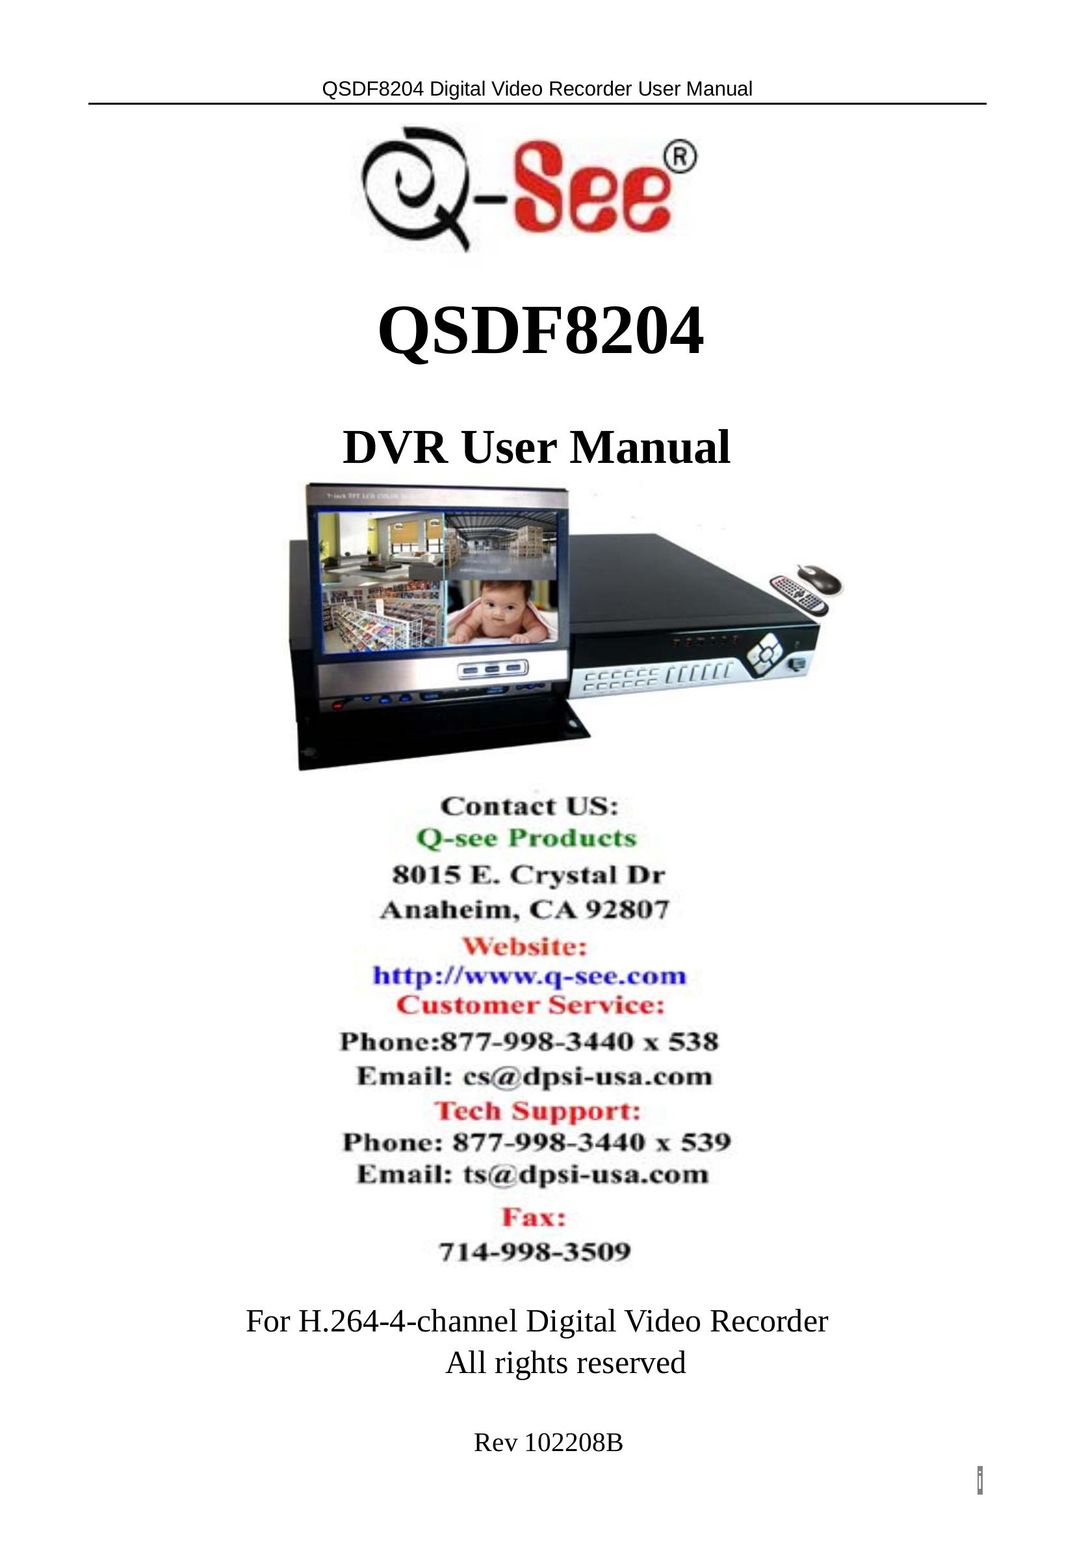 Q-See QSDF8204 DVR User Manual